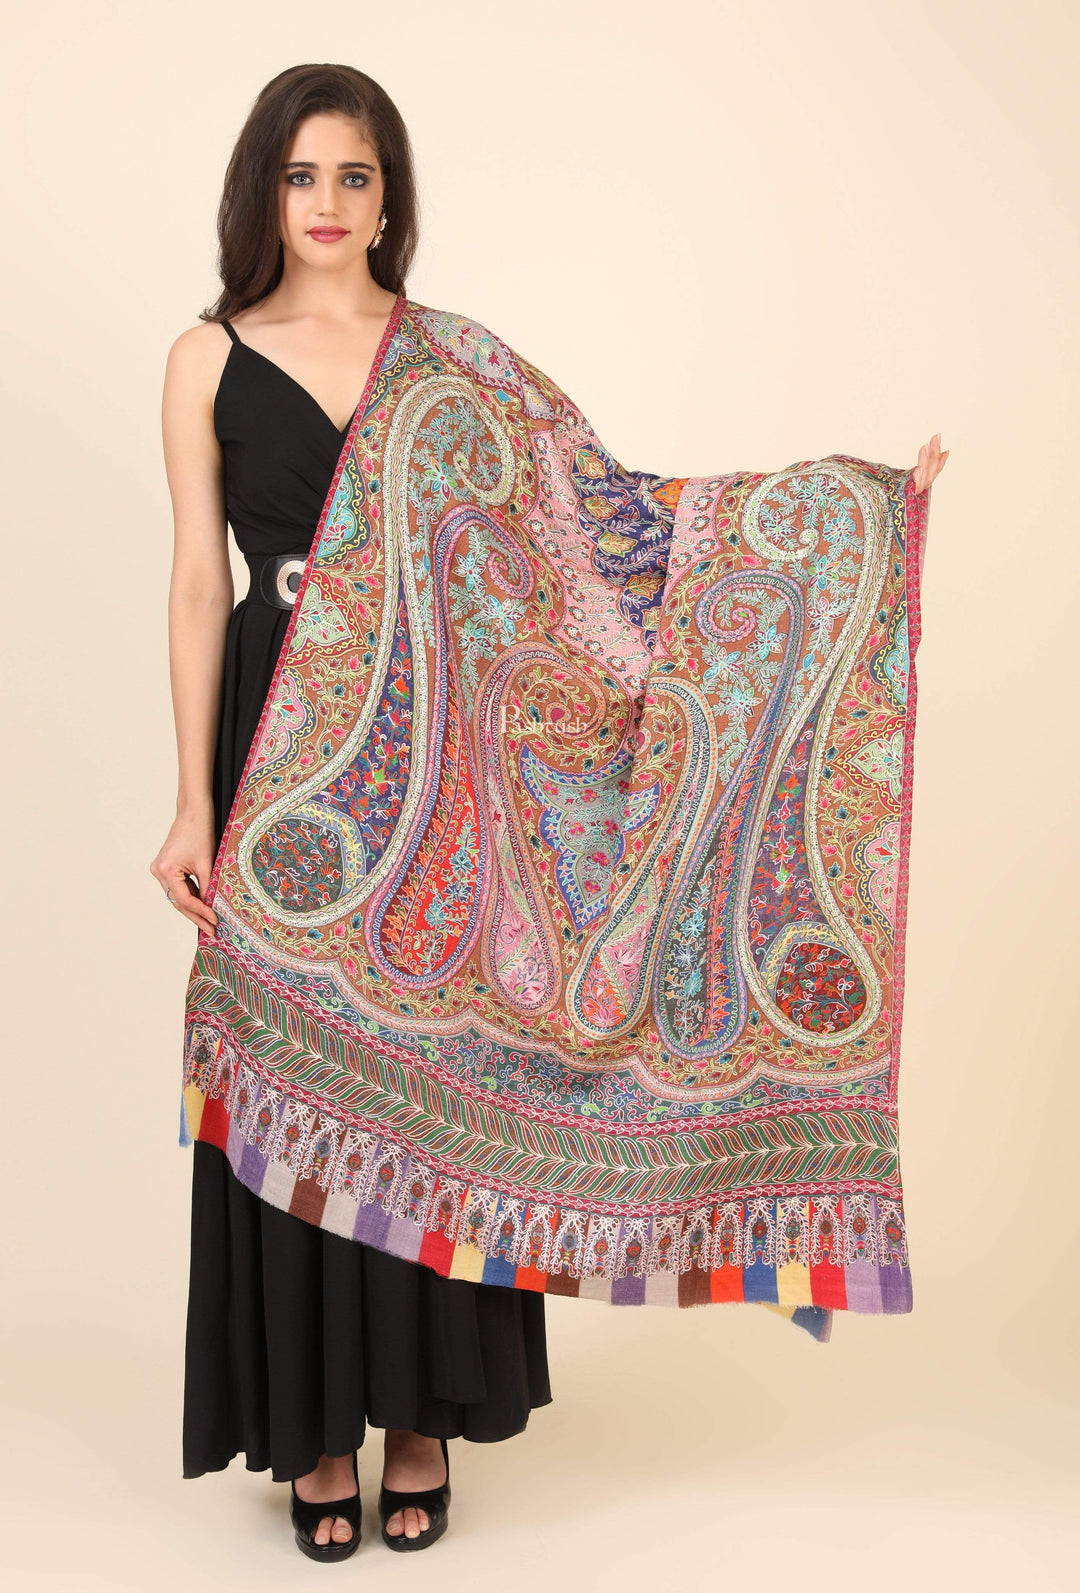 Pashtush India 100x200 Pashtush Womens Pure Wool, Hand Embroidered Kalamkari Shawl, With Woolmark Certificate